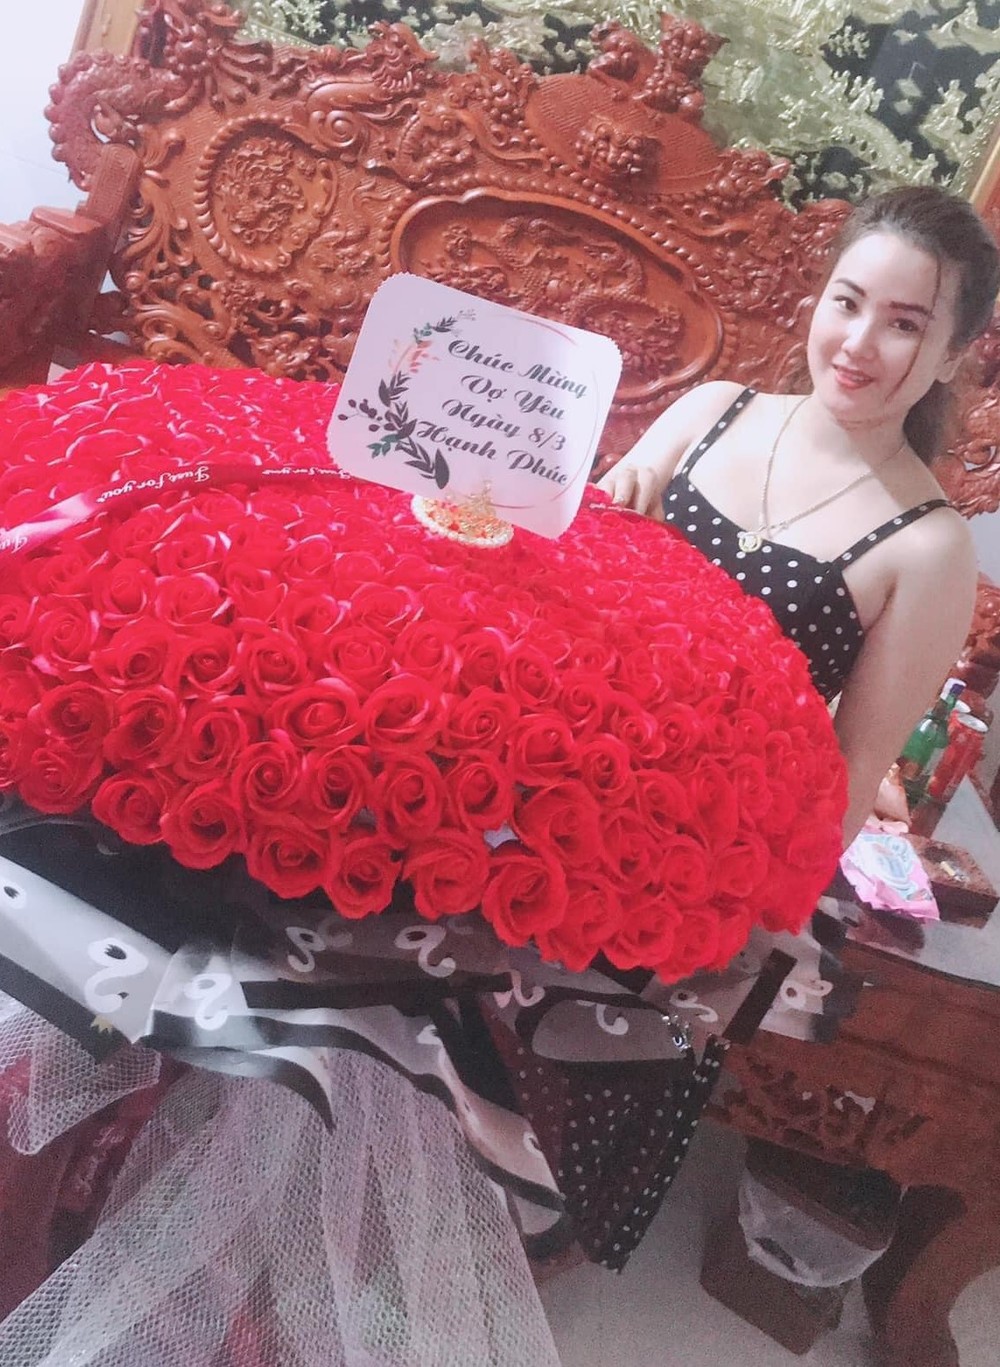  
500 bông hồng đỏ thắm chứng minh tình yêu anh dành cho vợ nha. (Ảnh: FB Nghệ An)